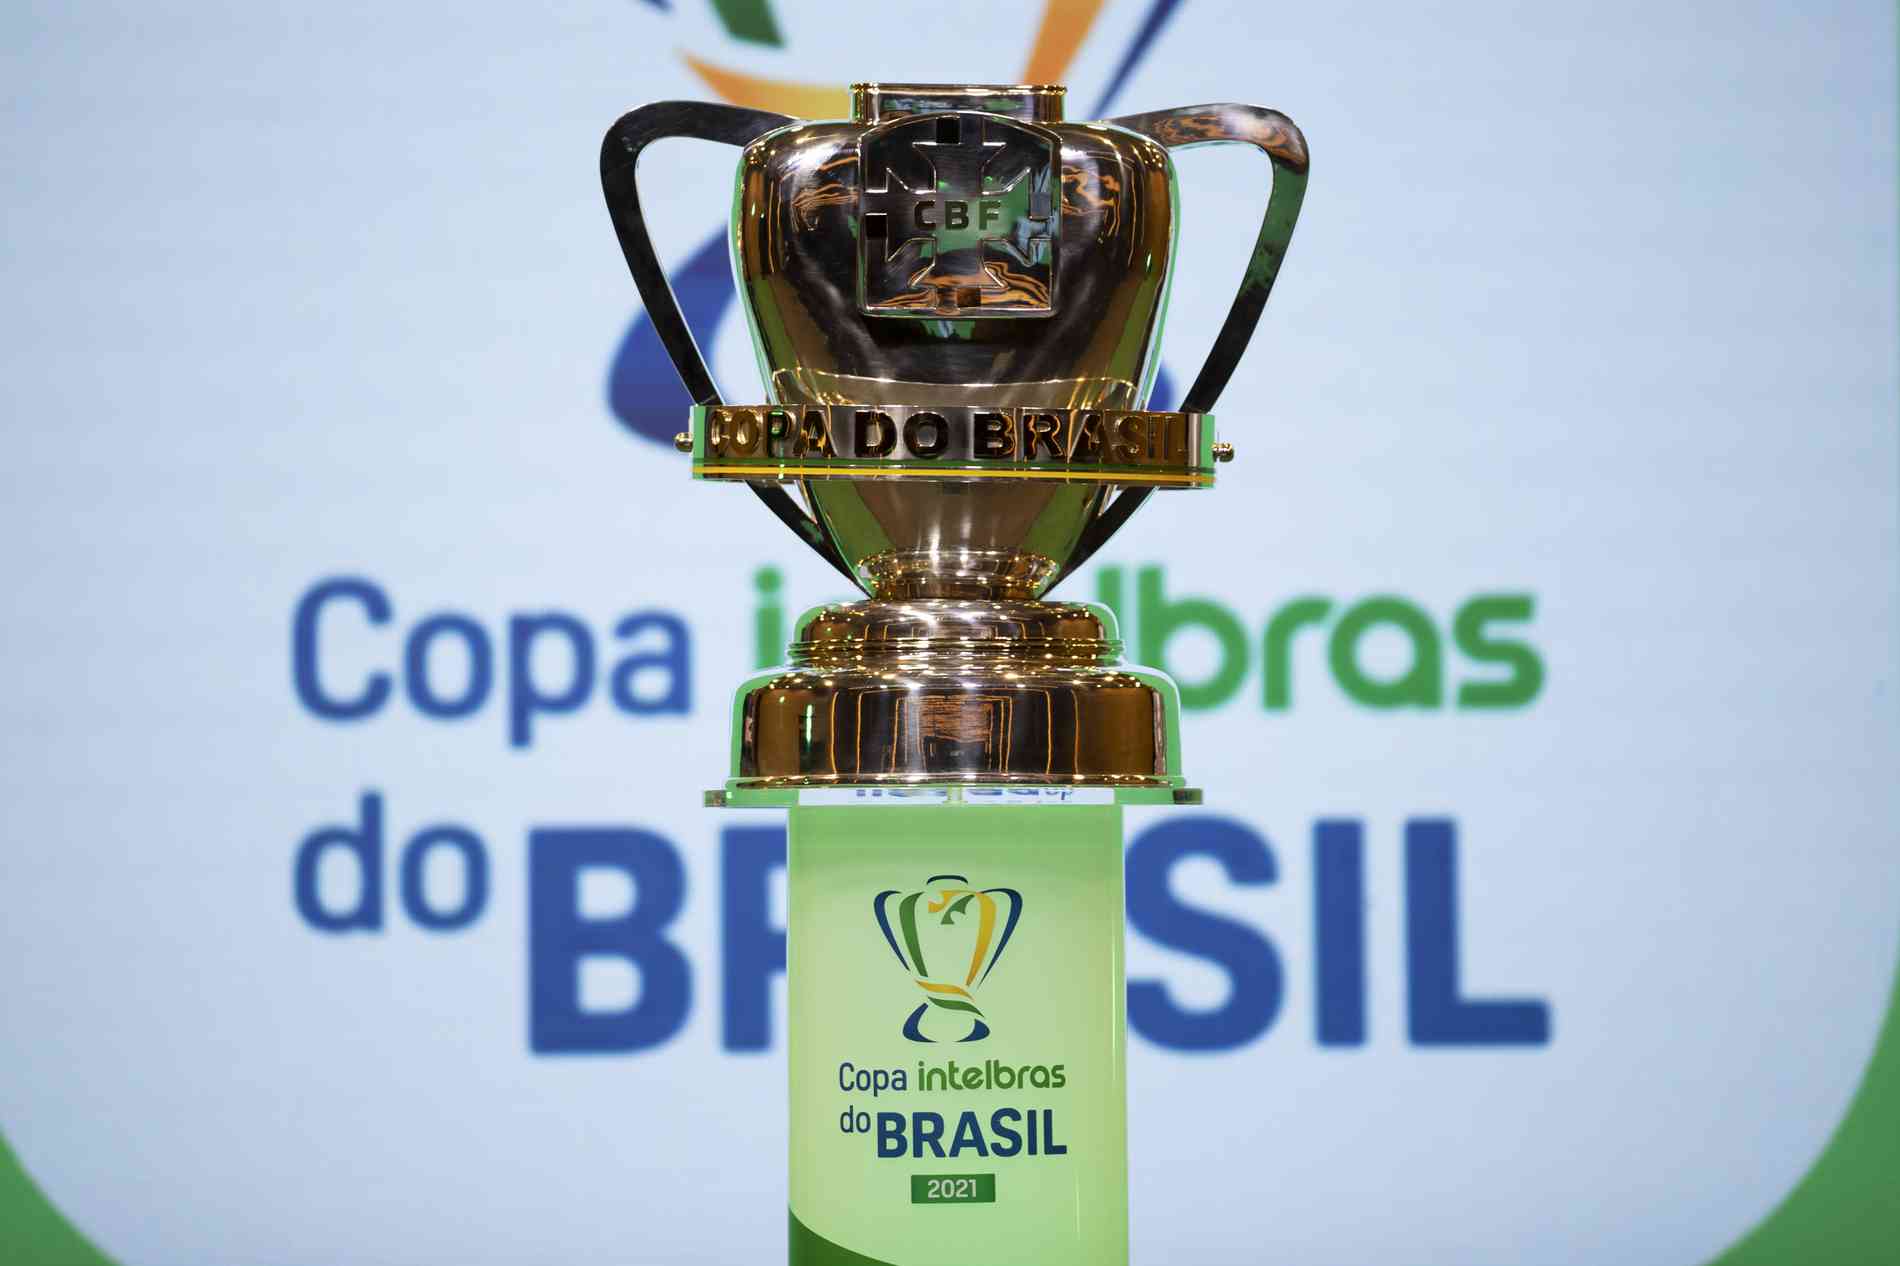 Os títulos brasileiros no Campeonato Mundial de Clubes - Portal Piripiri em  Destaque